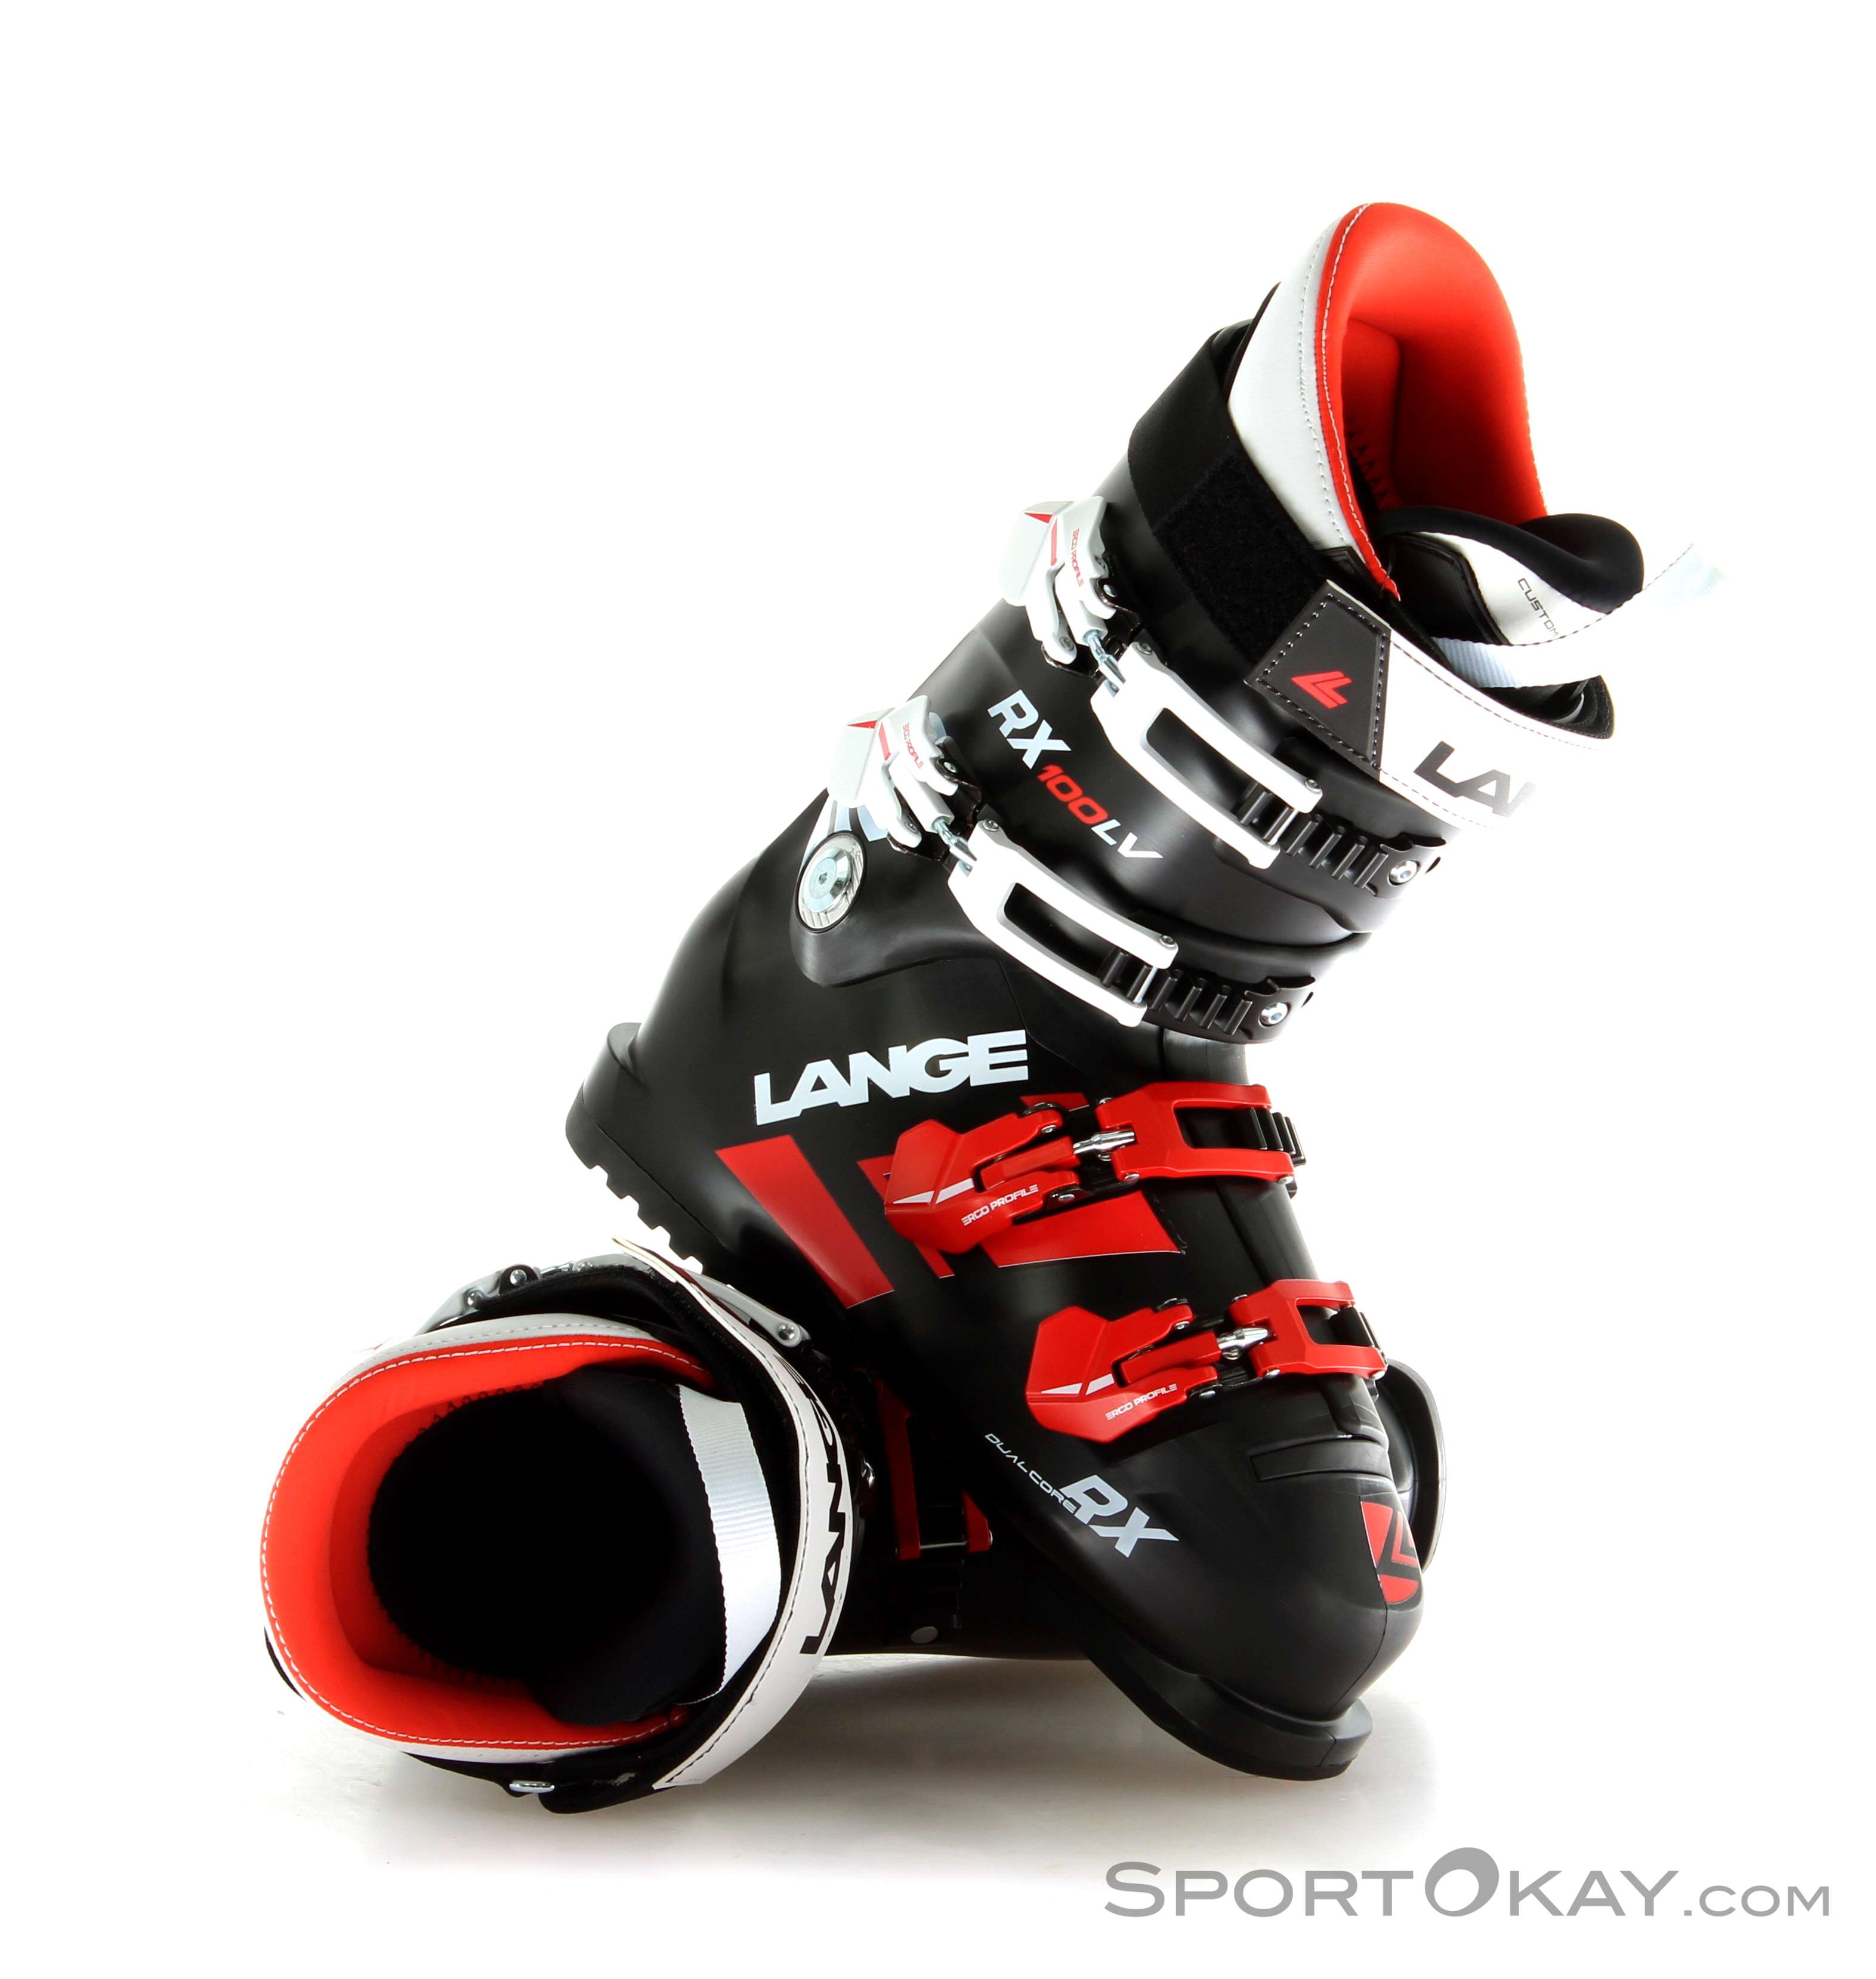 lange rx 8 lv ski boots